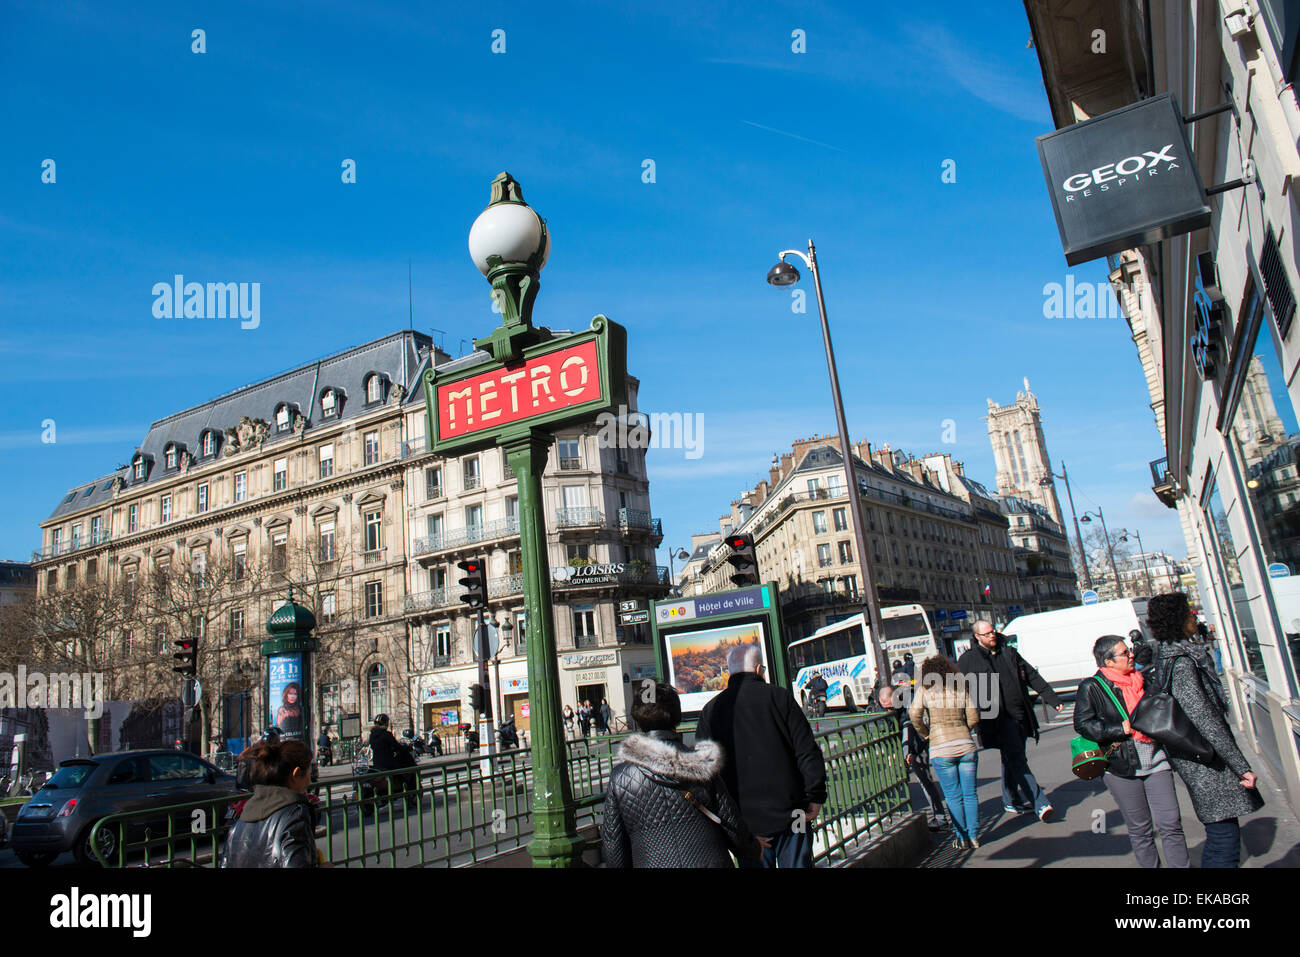 Rue de rivoli shops hi-res stock photography and images - Alamy